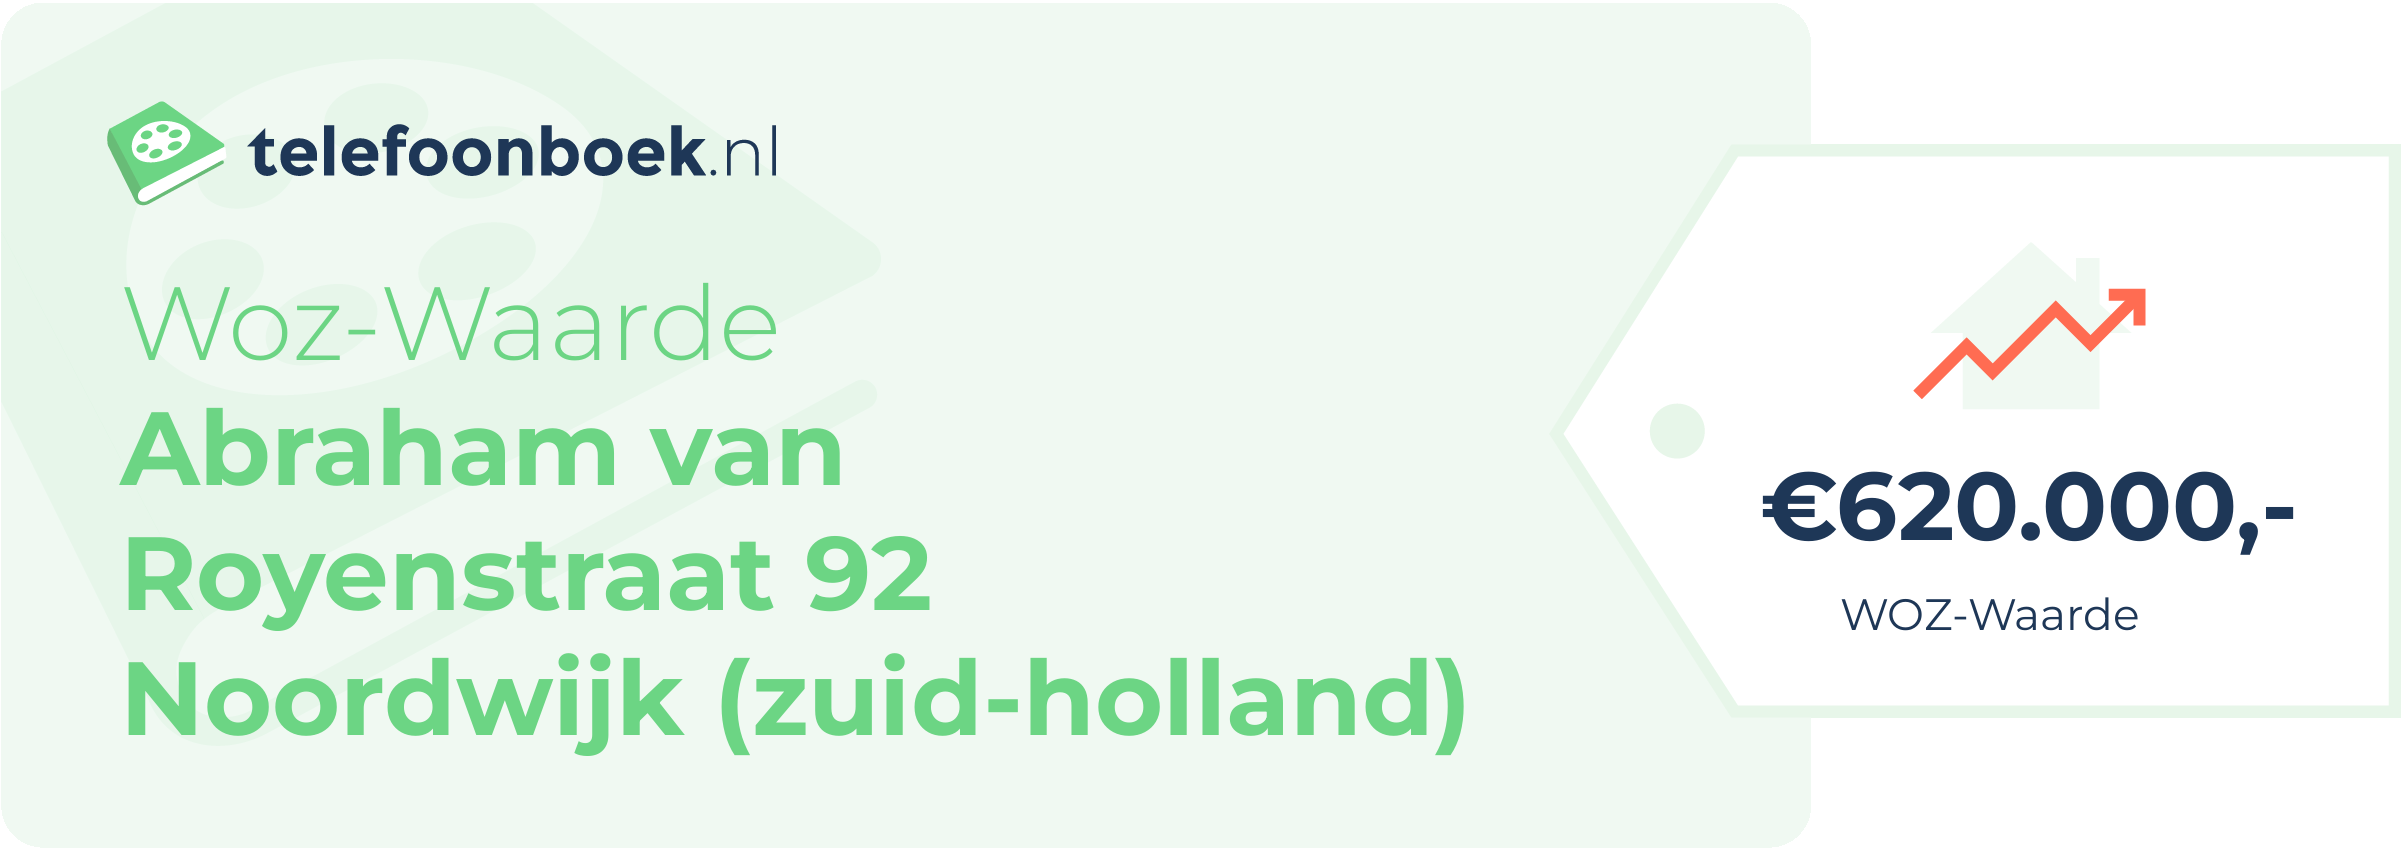 WOZ-waarde Abraham Van Royenstraat 92 Noordwijk (Zuid-Holland)